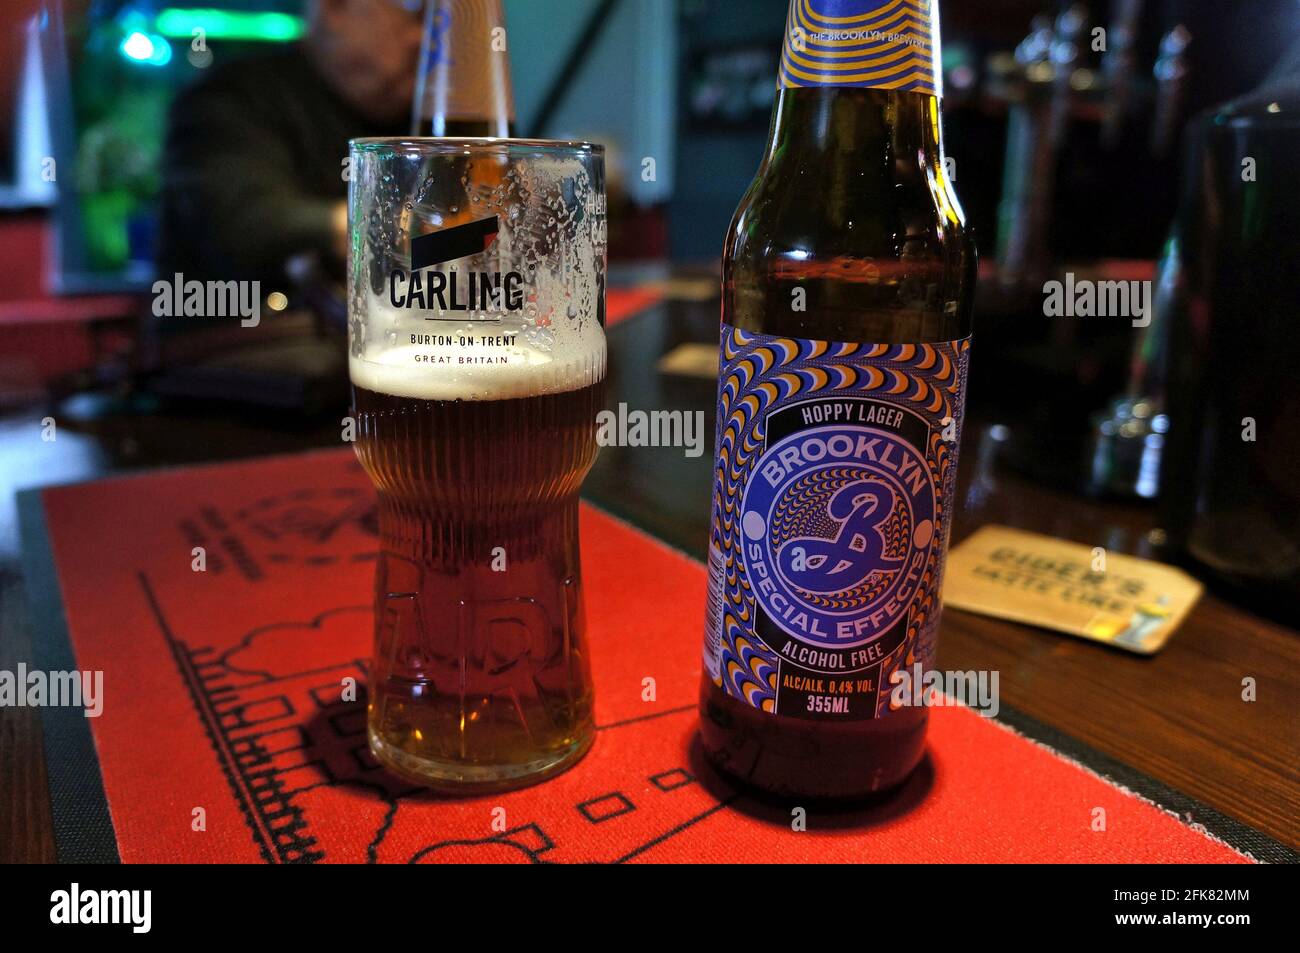 Brooklyn alkoholfreie Bierflasche und Glas an der Bar auf weichem Hintergrund Stockfoto